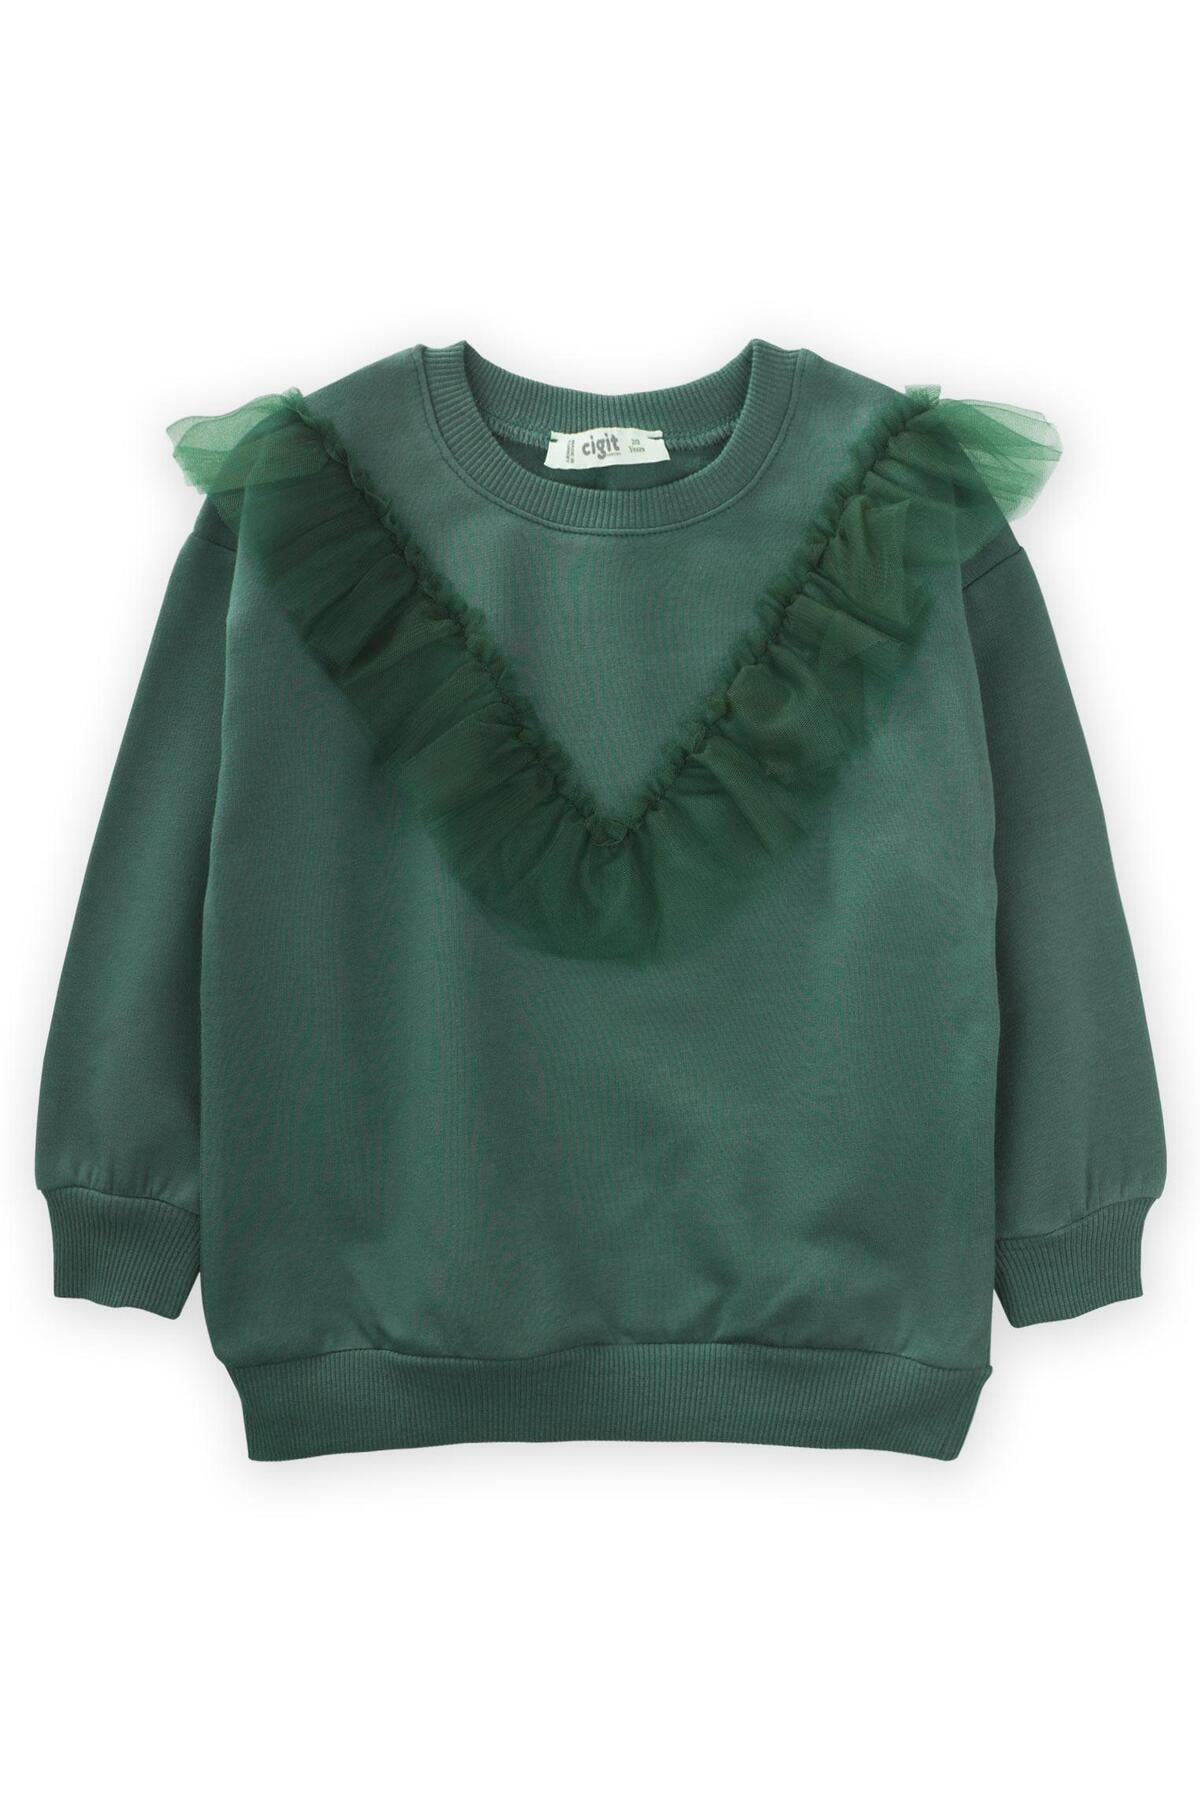 Cigit Tül Detaylı Sweatshirt 2-10 Yaş Haki Yeşil